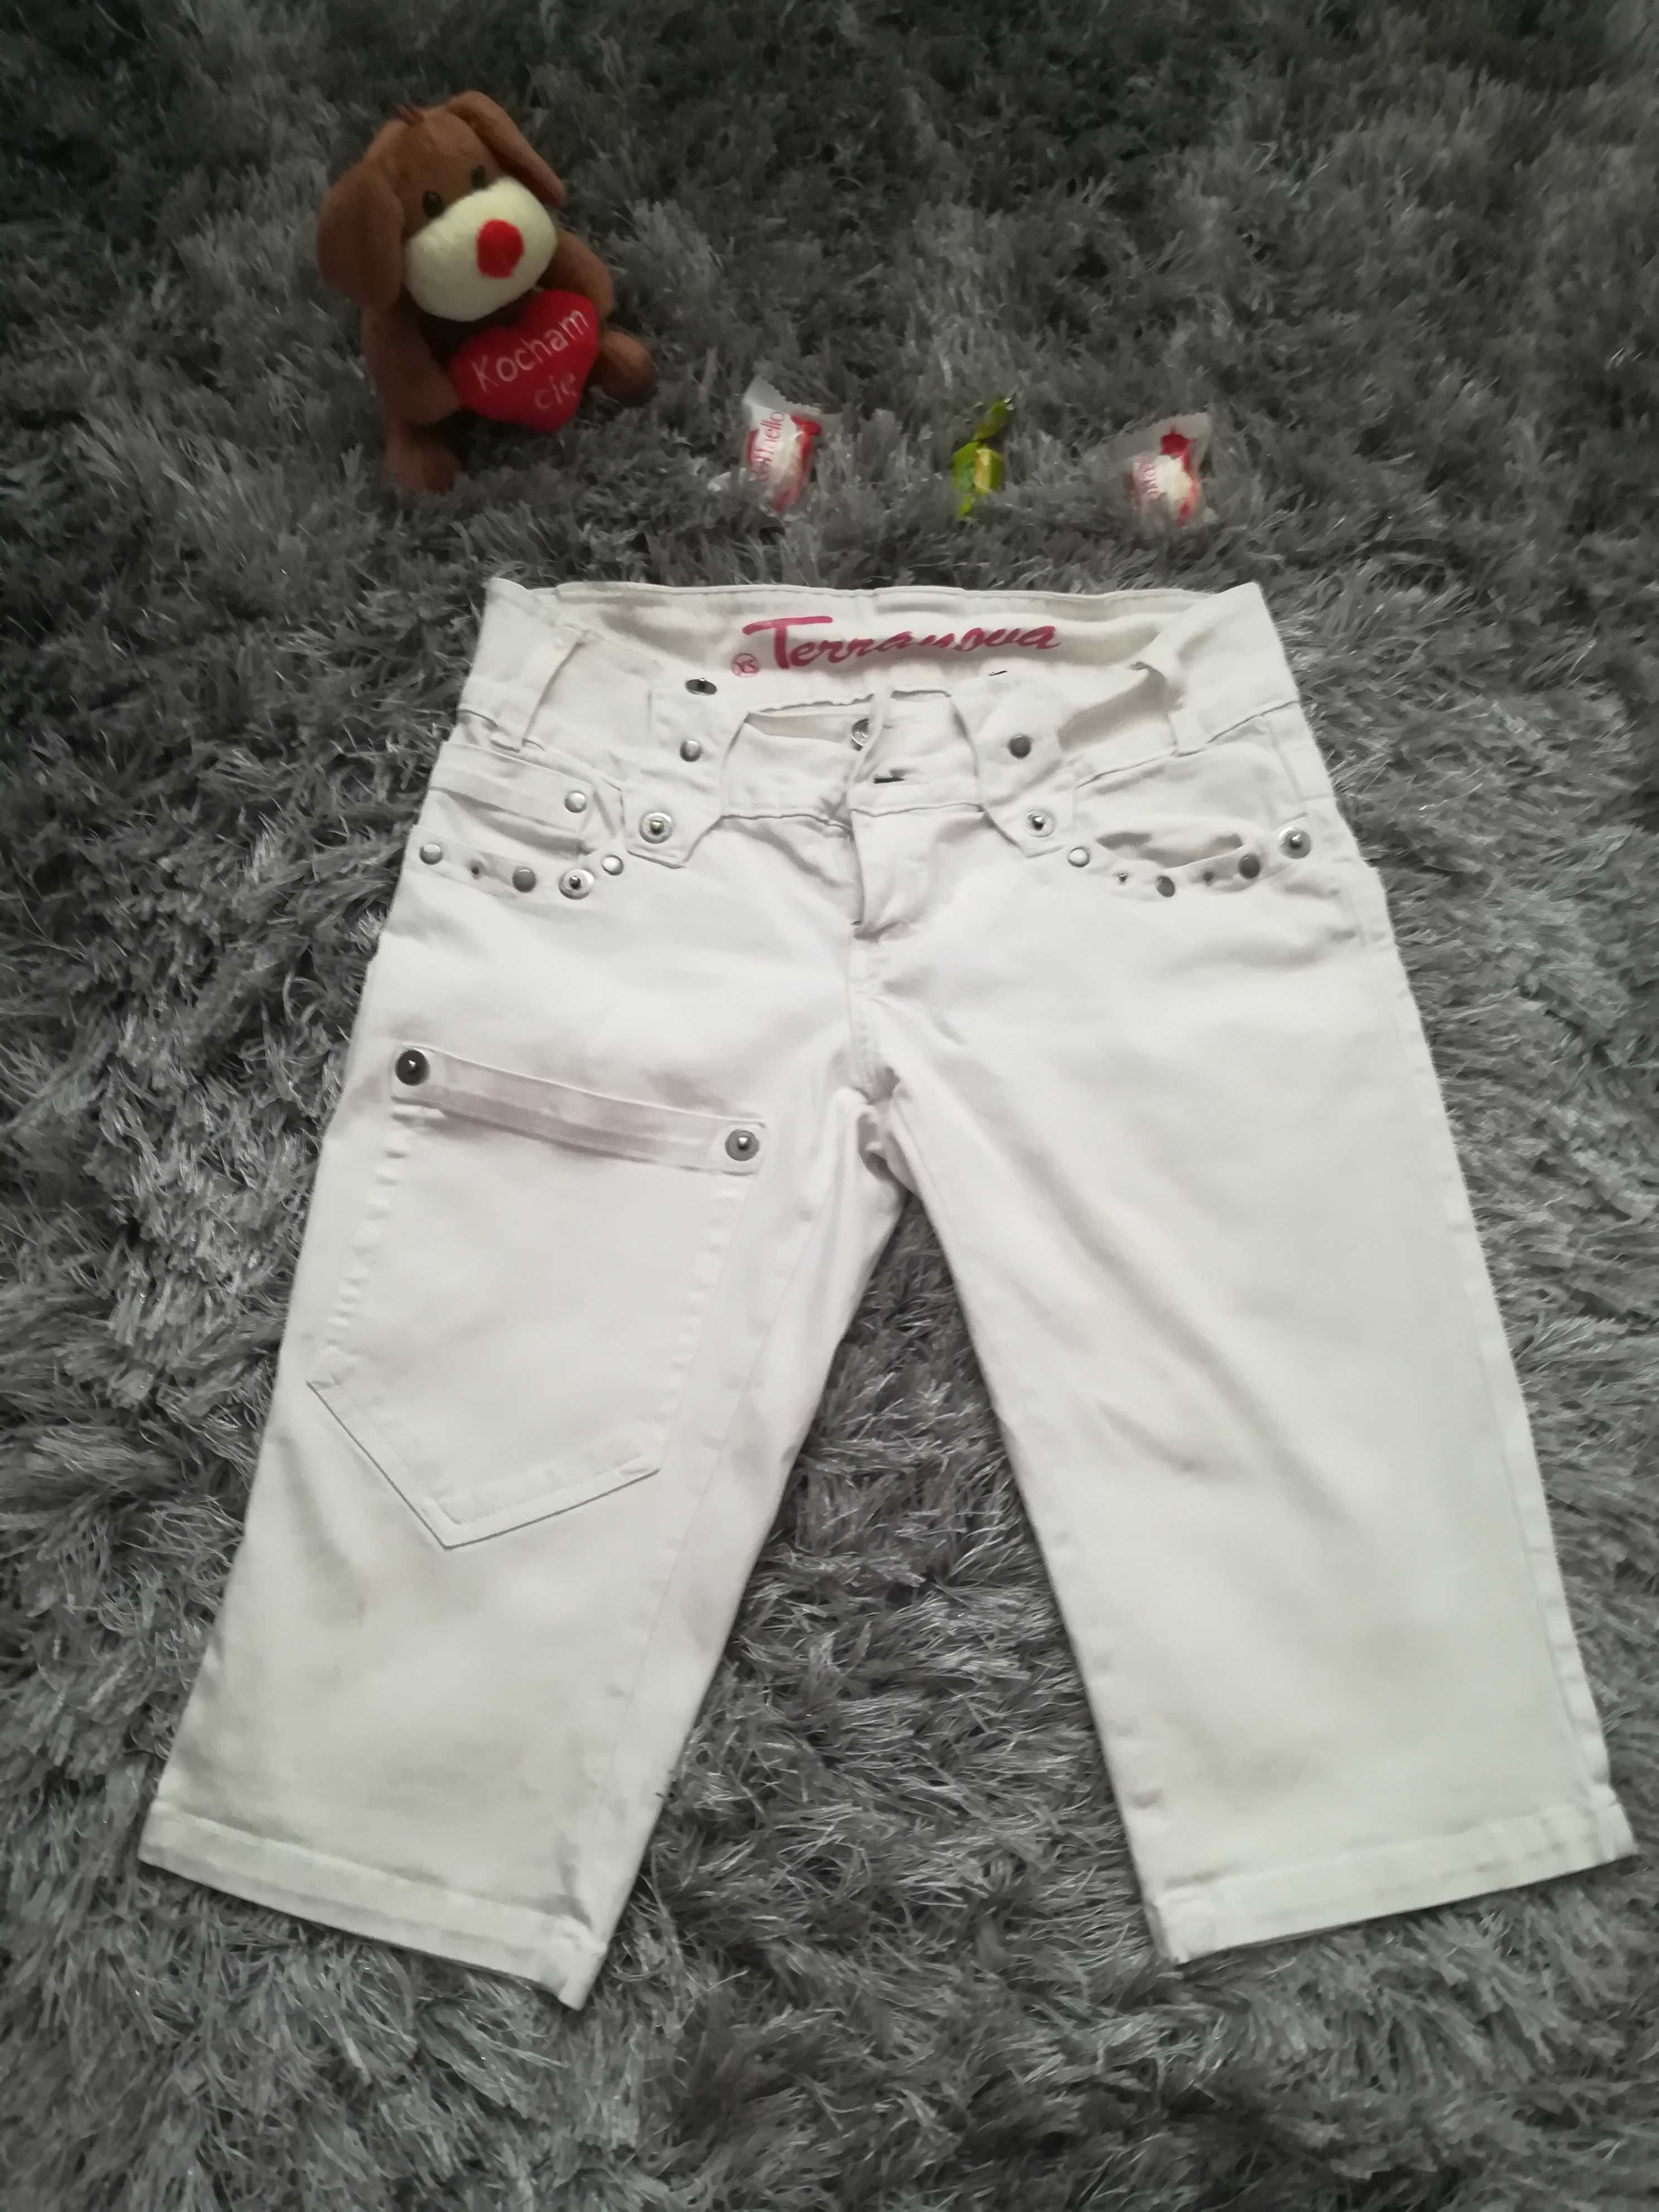 Spodenki jeansowe białe, rybaczki damskie Terranowa. XS. Kolor biały.